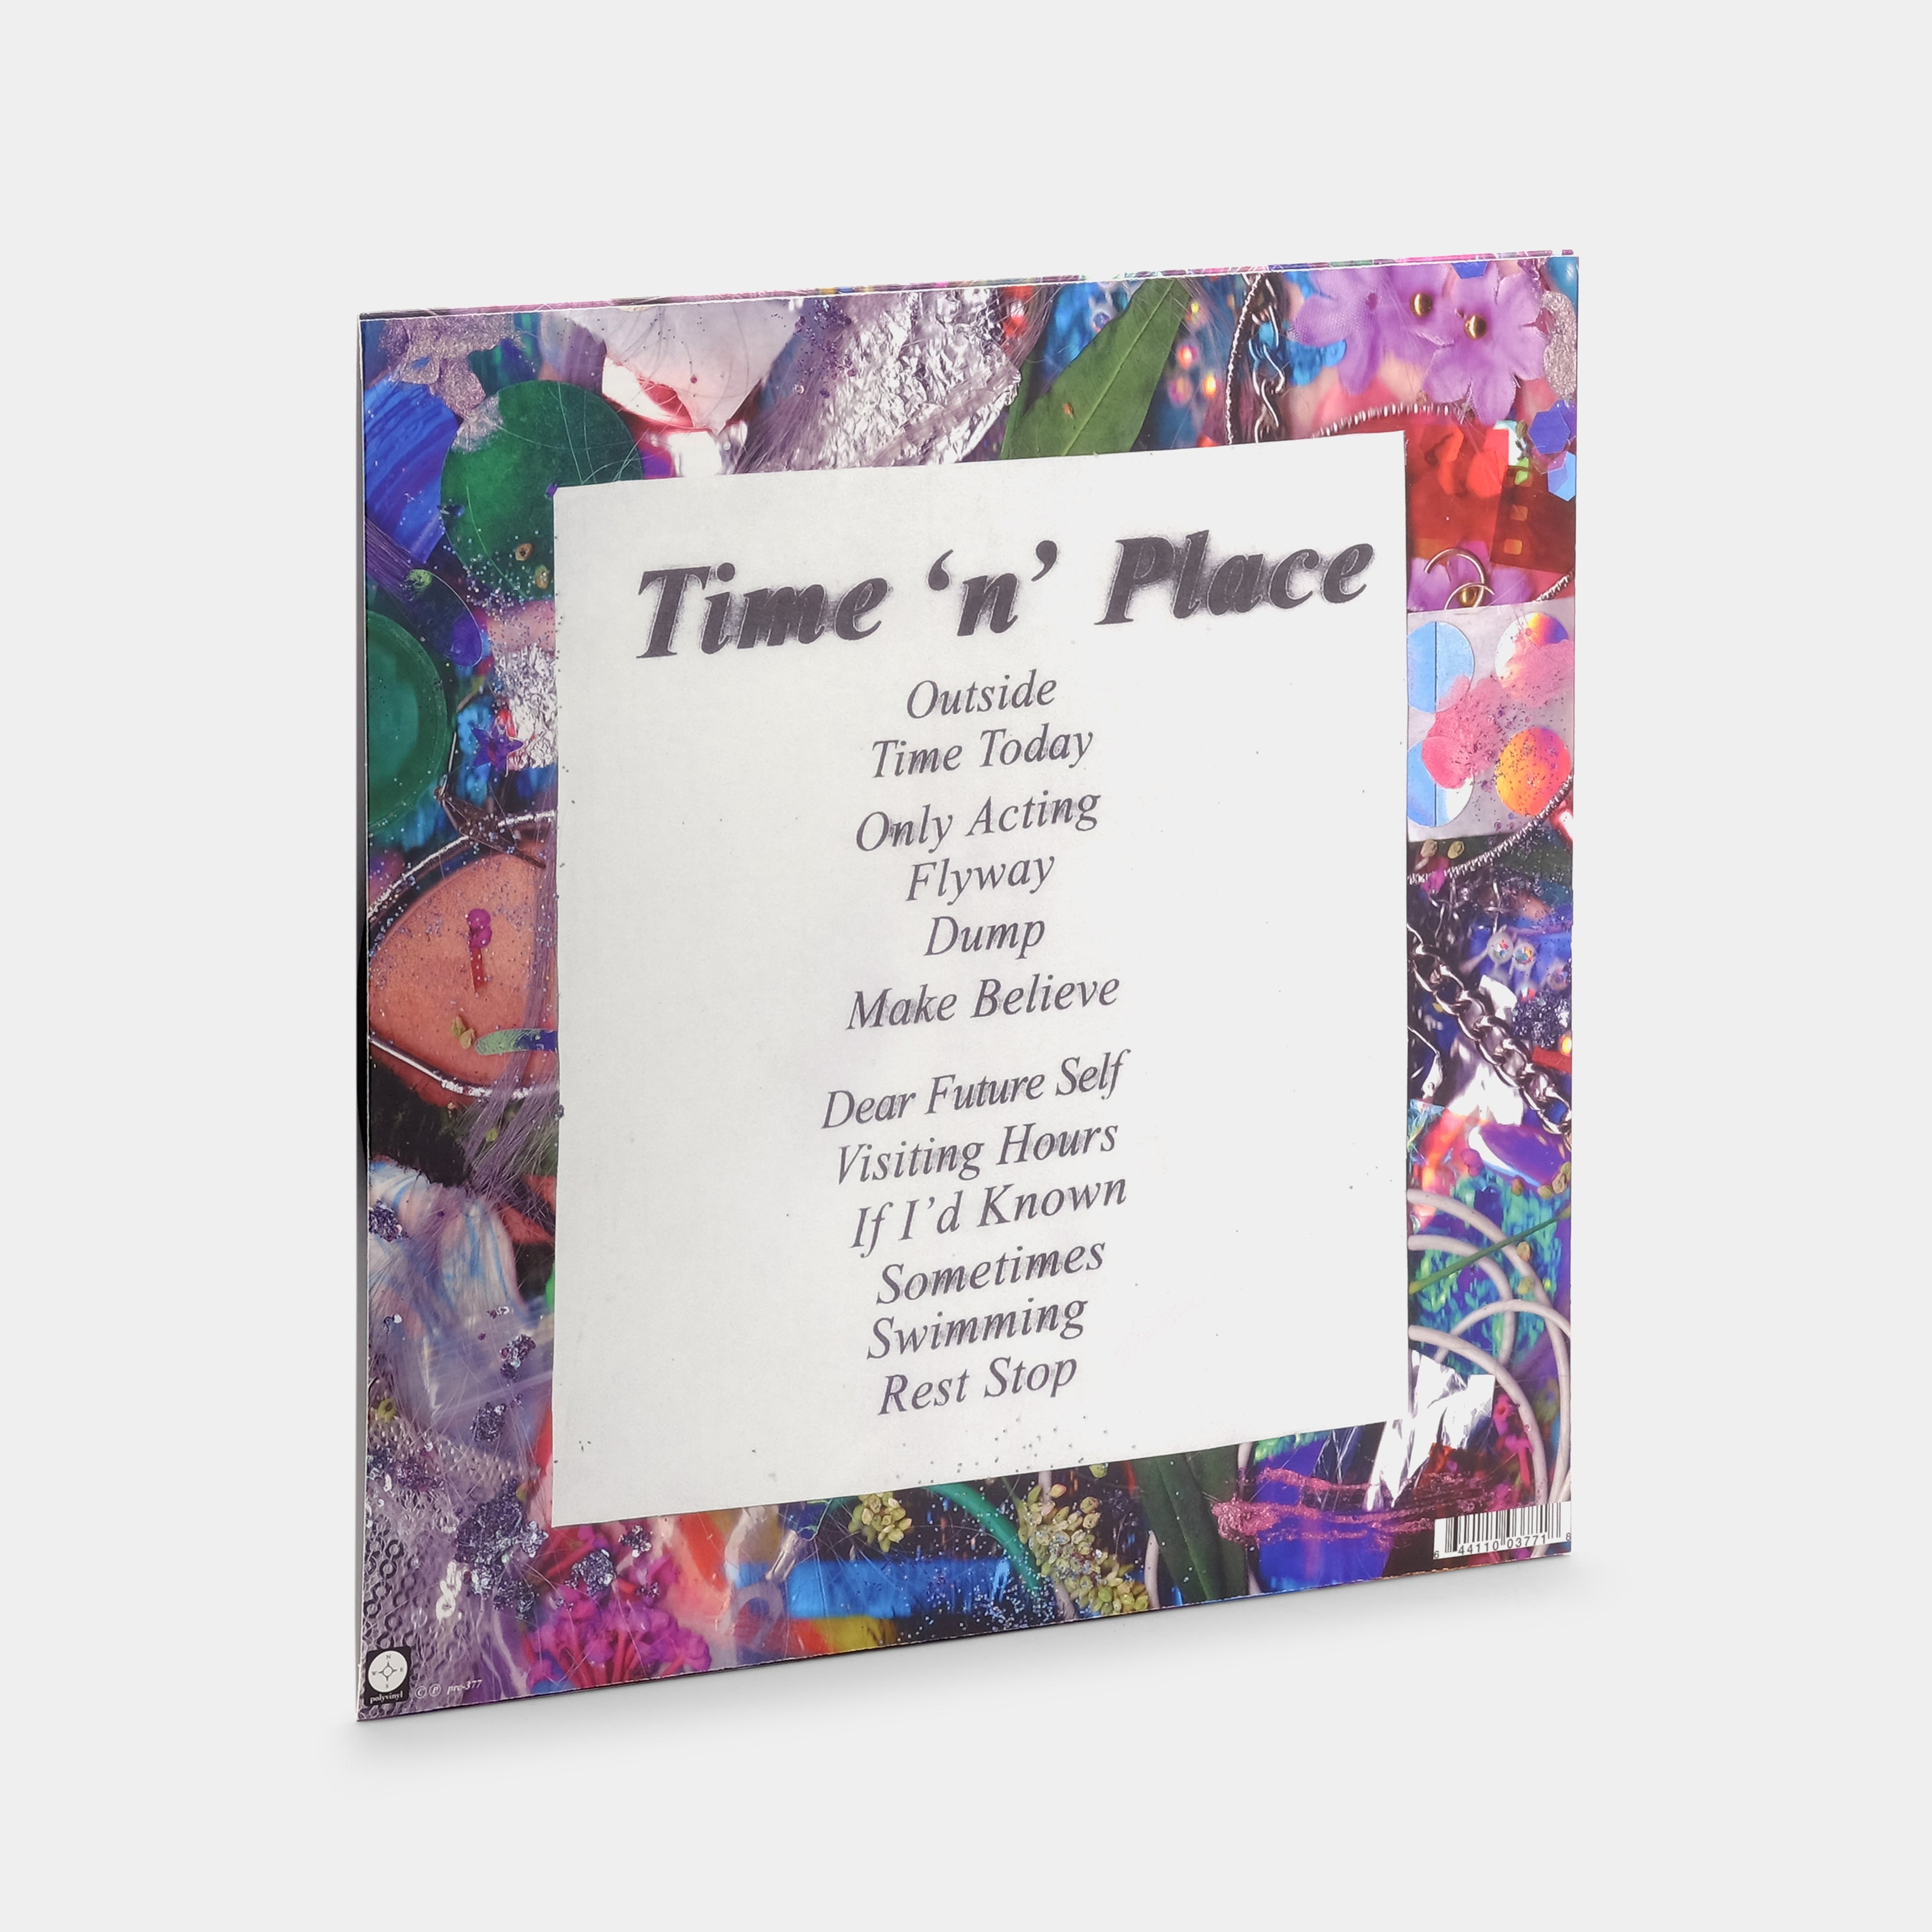 Kero Kero Bonito - Time 'n' Place LP Vinyl Record